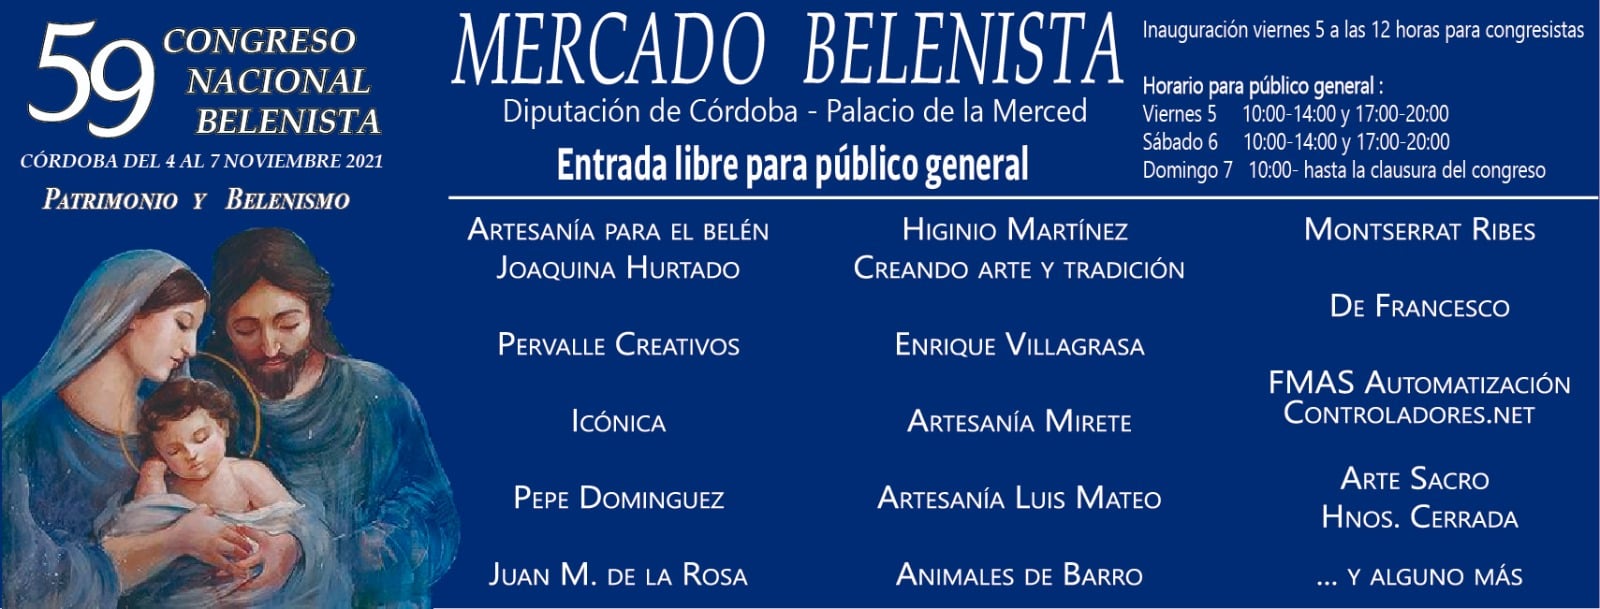 Artesanos y profesionales participantes en el LIX Congreso Nacional Belenista - Córdoba 2021